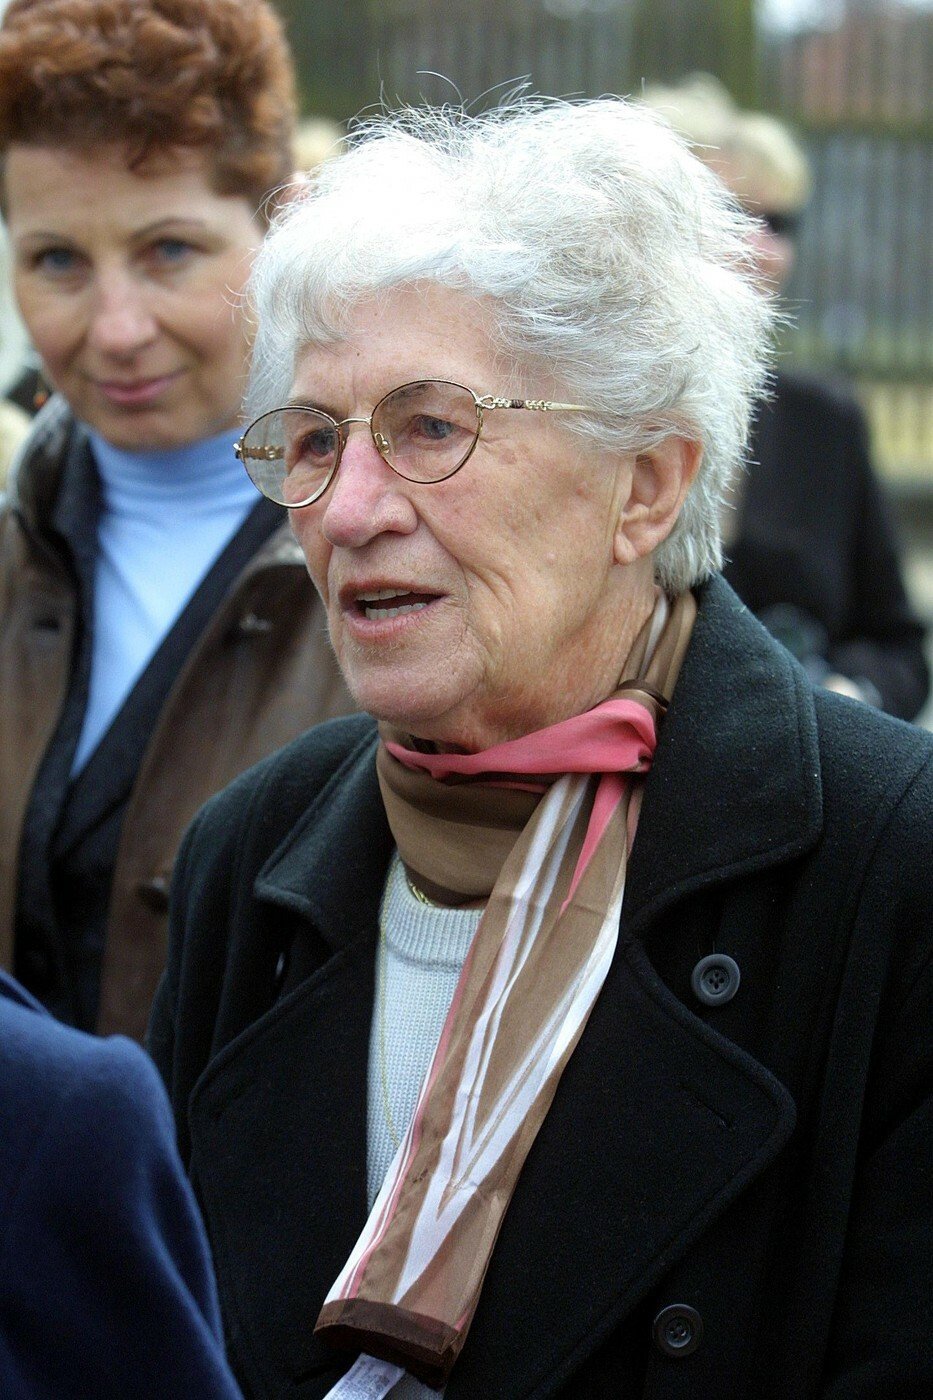 Sestra Jiřího Šlitra Olga Mroženská v roce 2003 při odhalení pamětní desky v Rychnově nad Kněžnou.